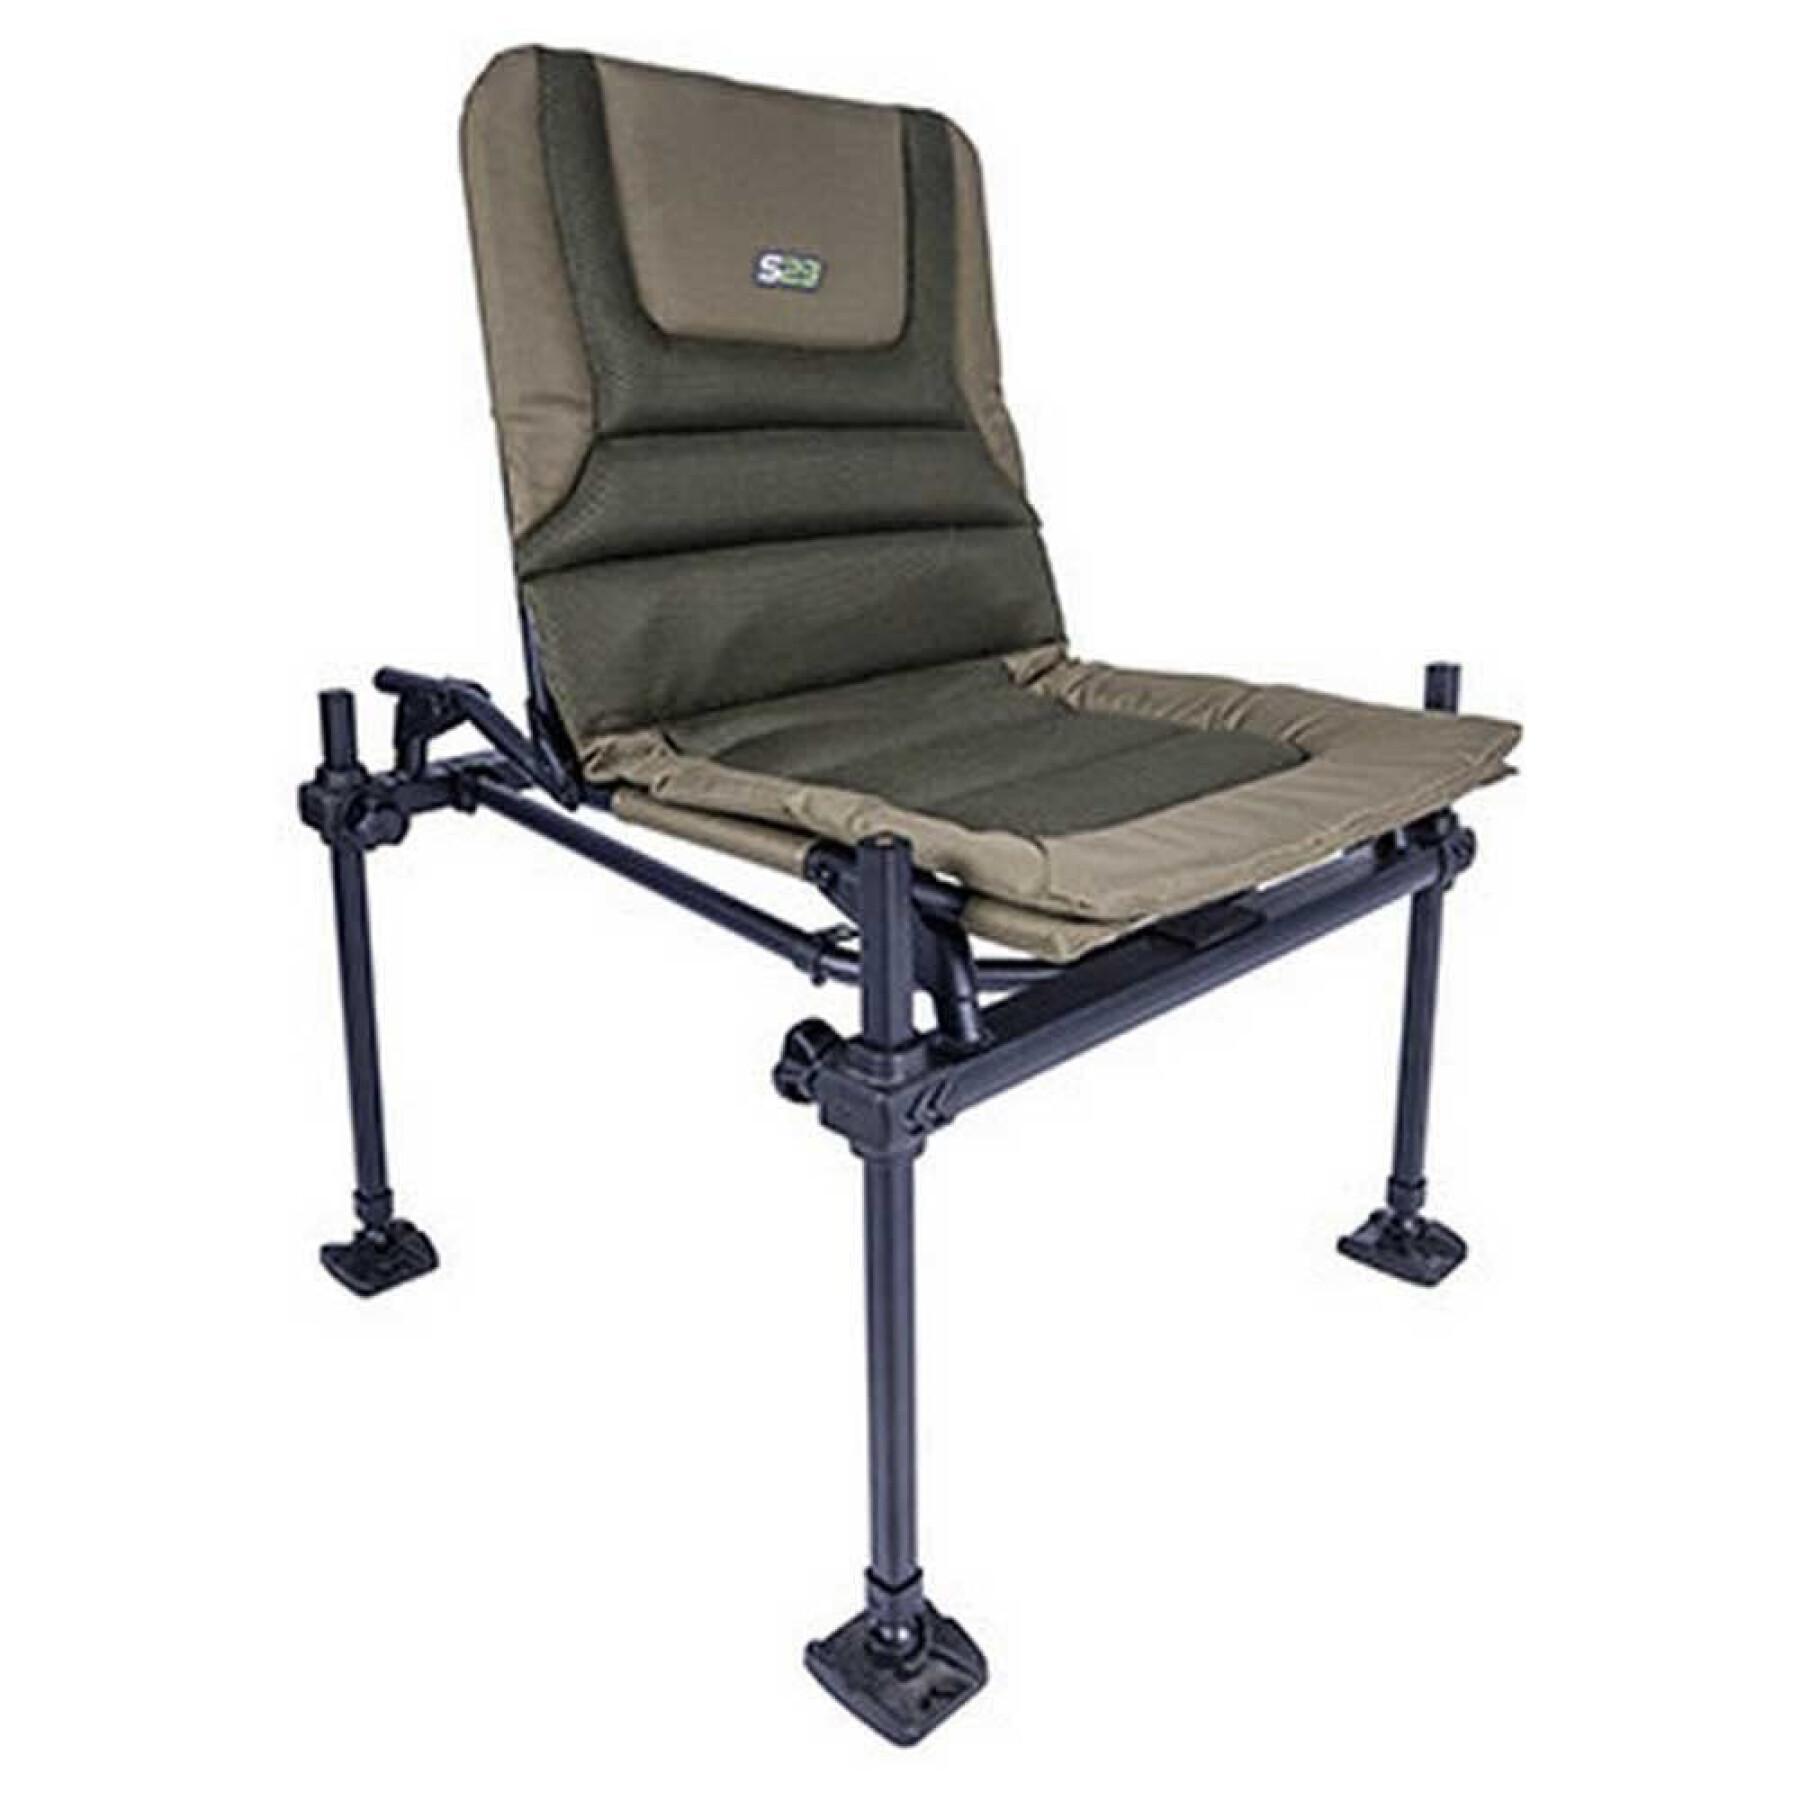 Standardowe krzesła z wyposażeniem dodatkowym Korum S23